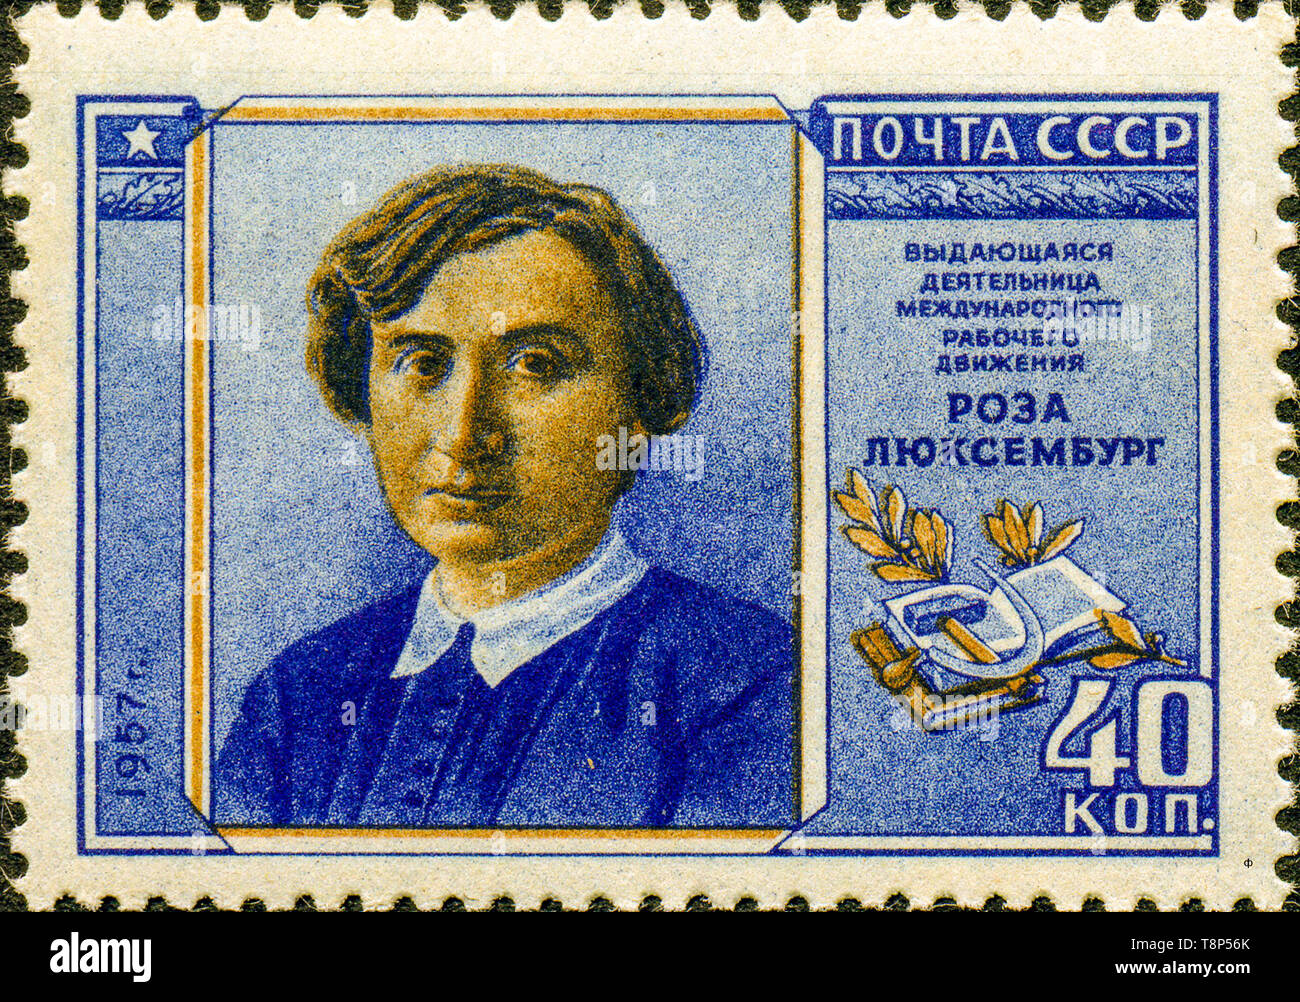 L'Unione Sovietica 1957-1958 CPA 2114 timbro (Rosa Luxemburg (1871-1919), tedesco socialista rivoluzionario Foto Stock